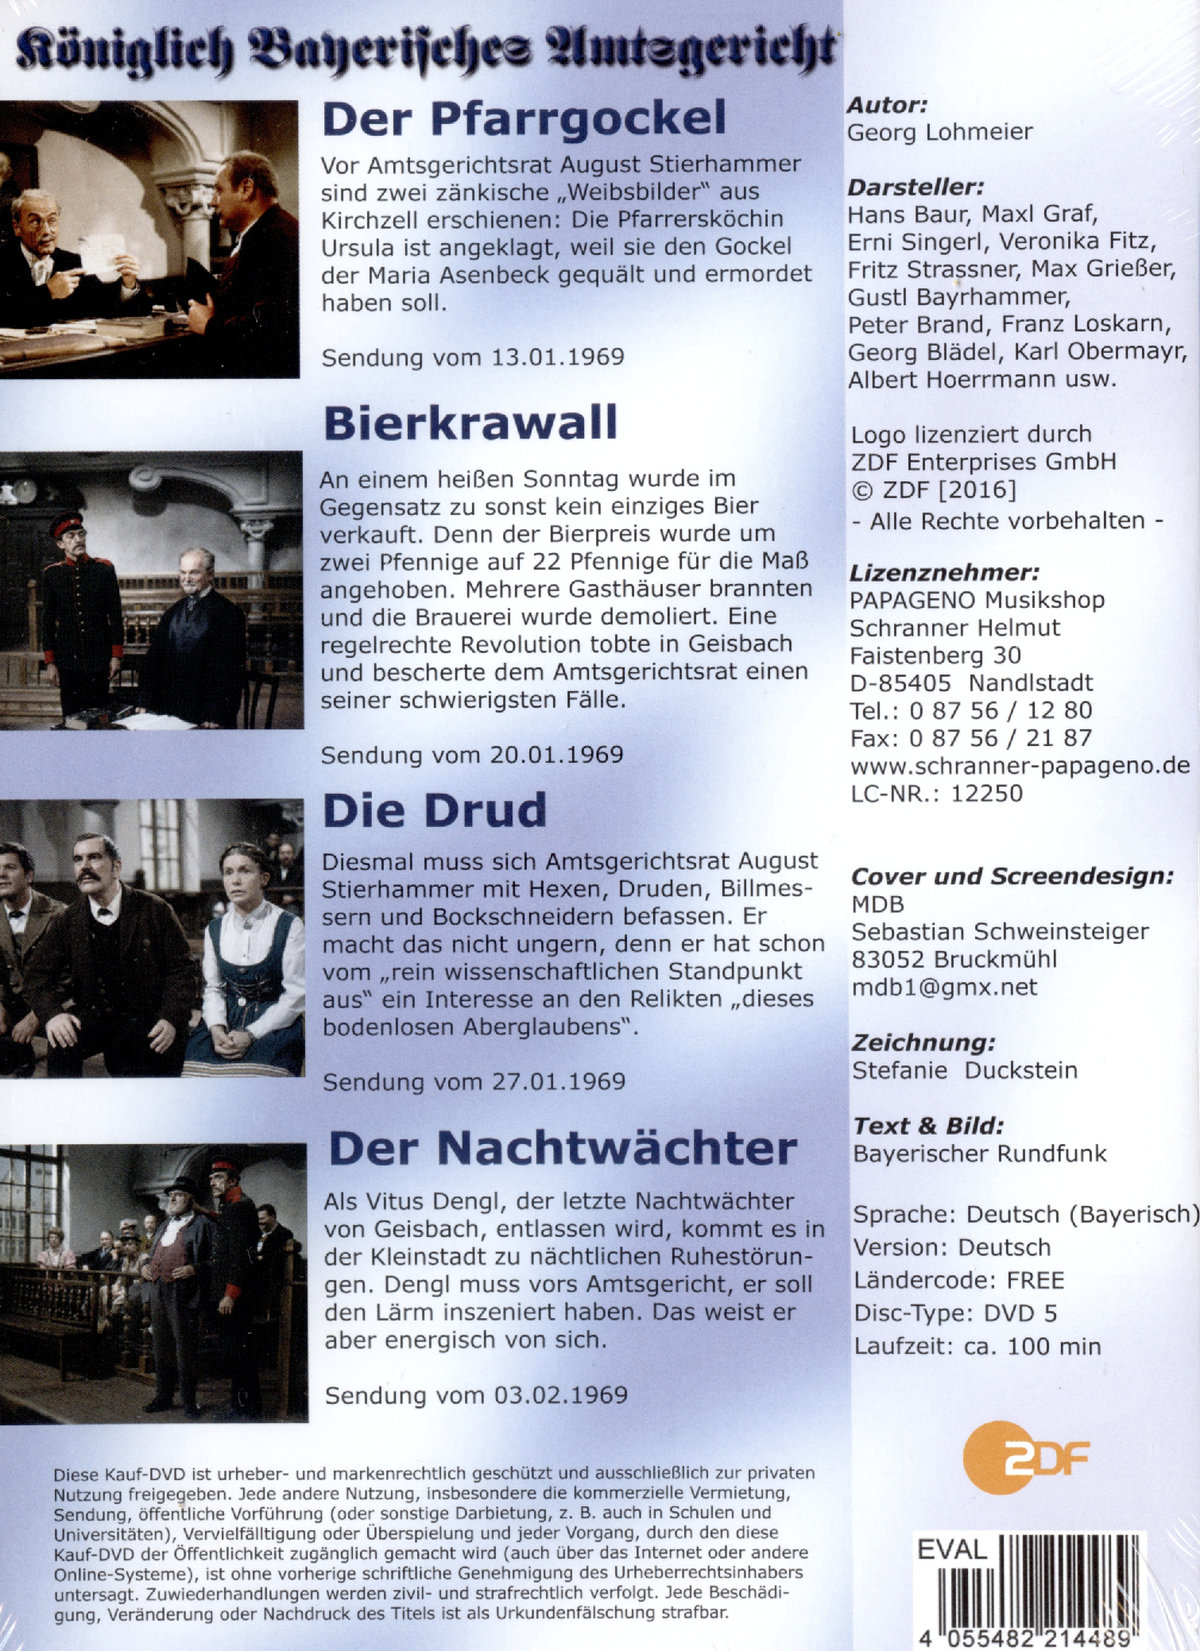 Königlich Bayerisches Amtsgericht - Folgen 01-04  (DVD)